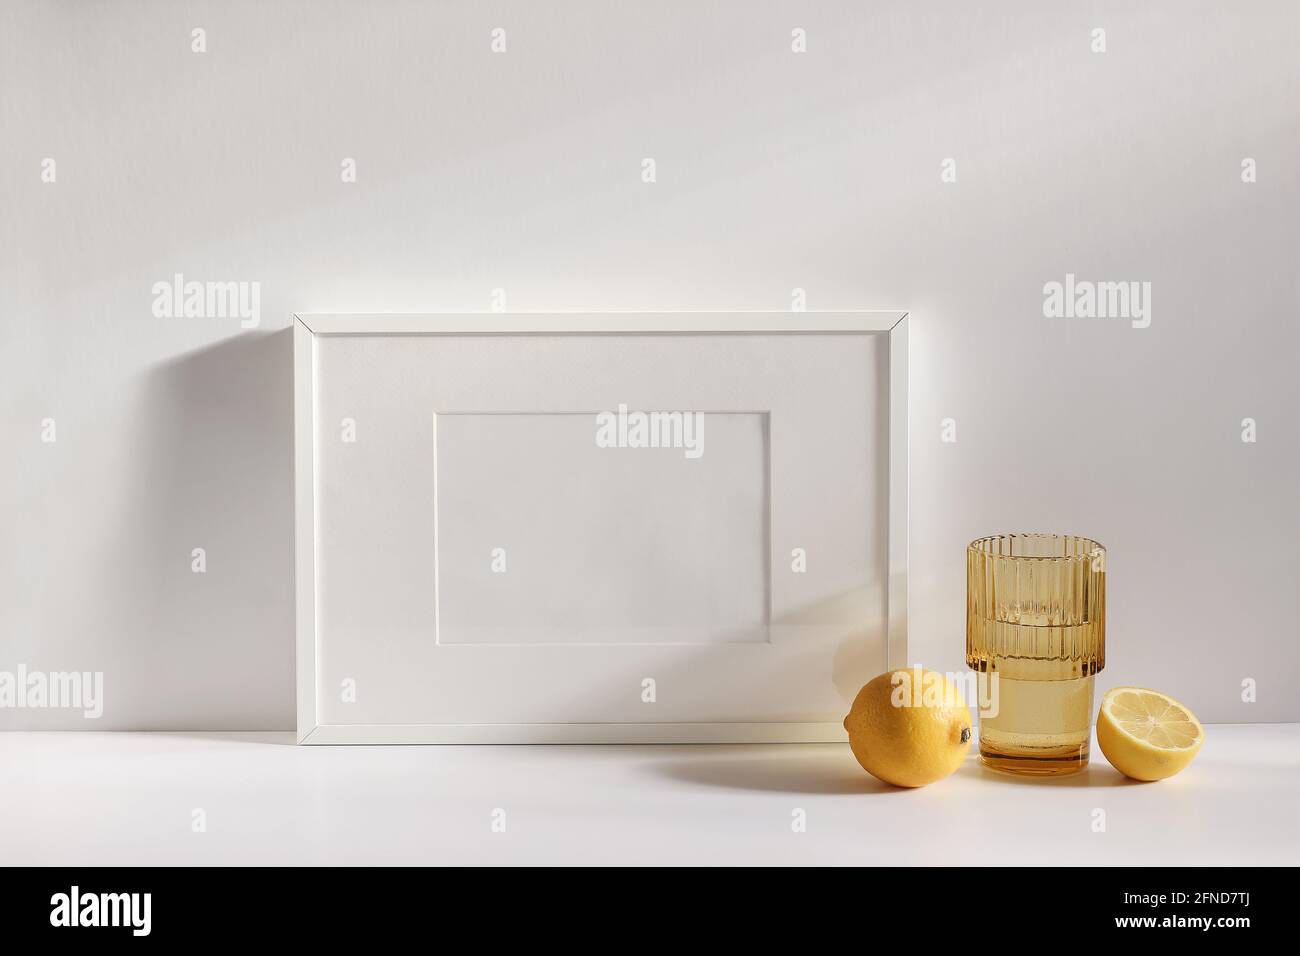 Summer stationery still life scene. Cut lemon fruit. Golden rippled glass of water on beige table background in sunlight. Blank white horizontal Stock Photo